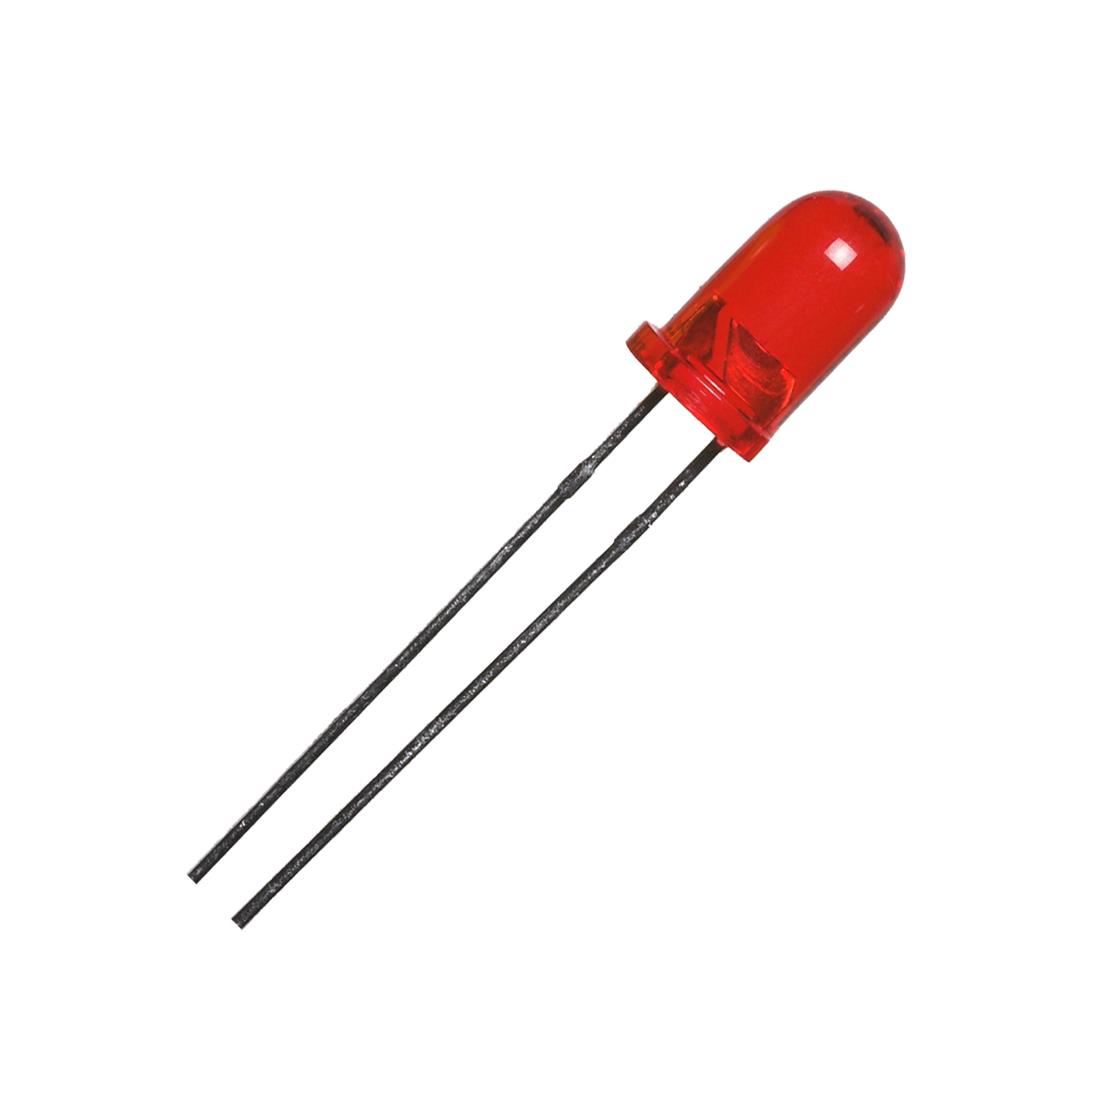 Lote 100 diodos led 5 mm rojo Color Rojo